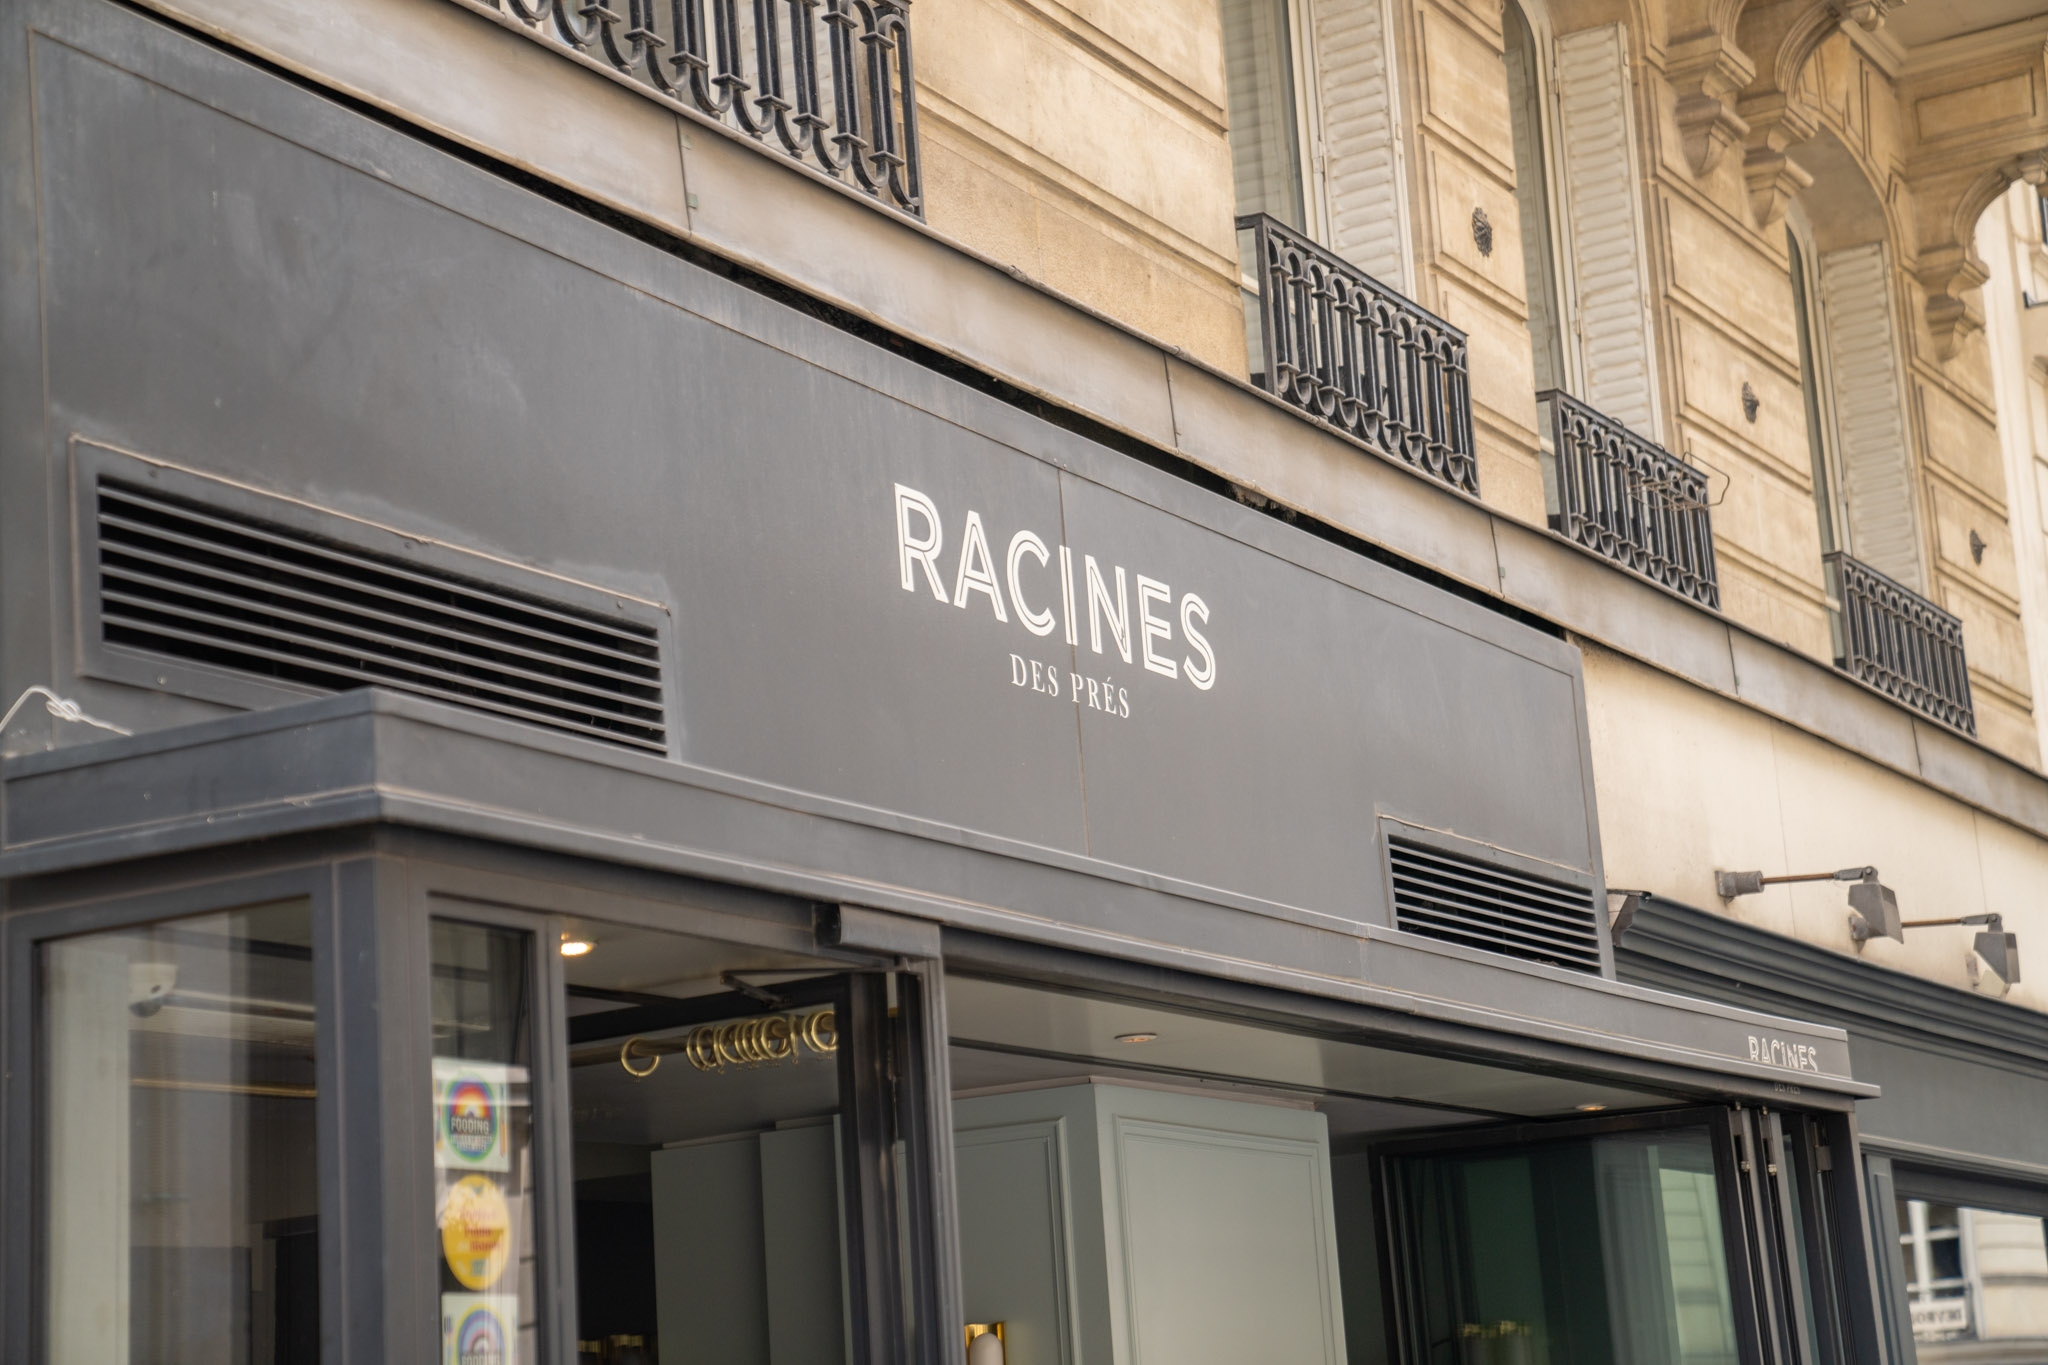 Racines des prés logo façade restaurant paris